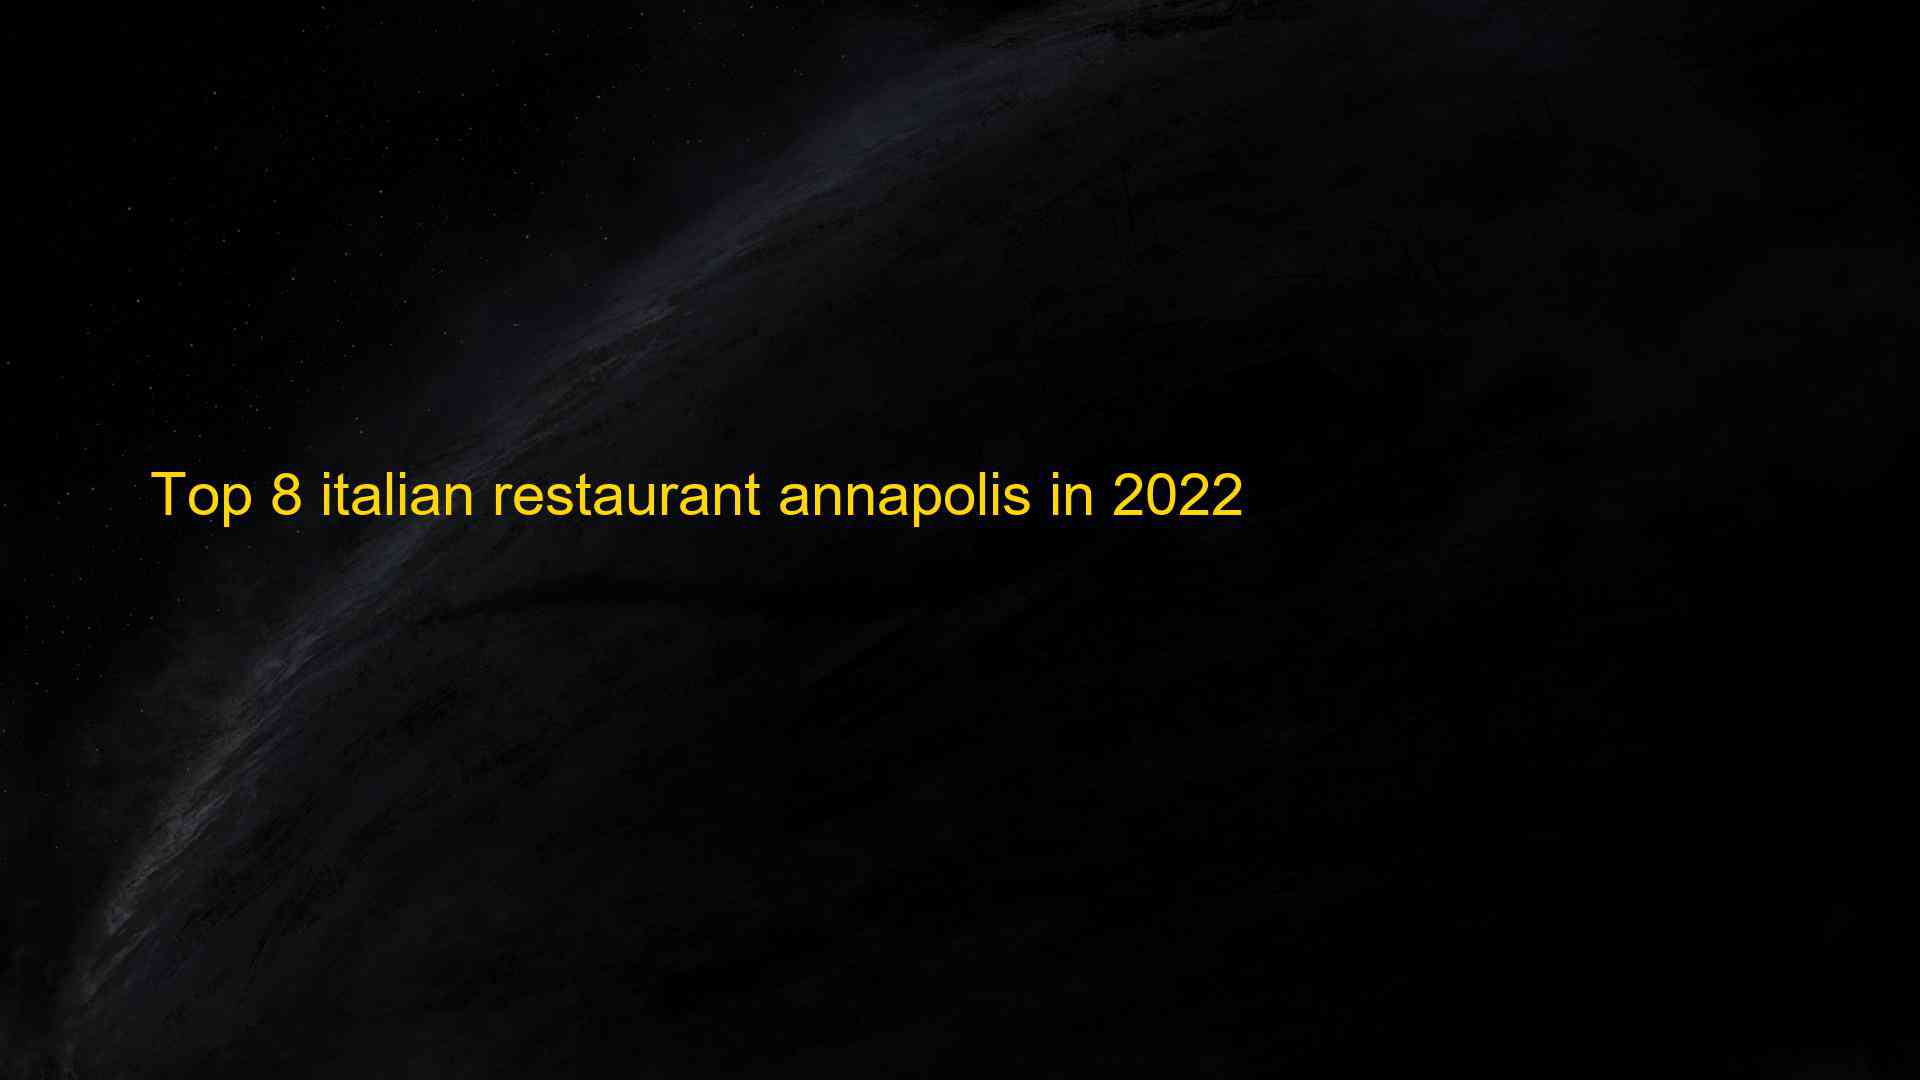 Top 8 italian restaurant annapolis in 2022 1663505490